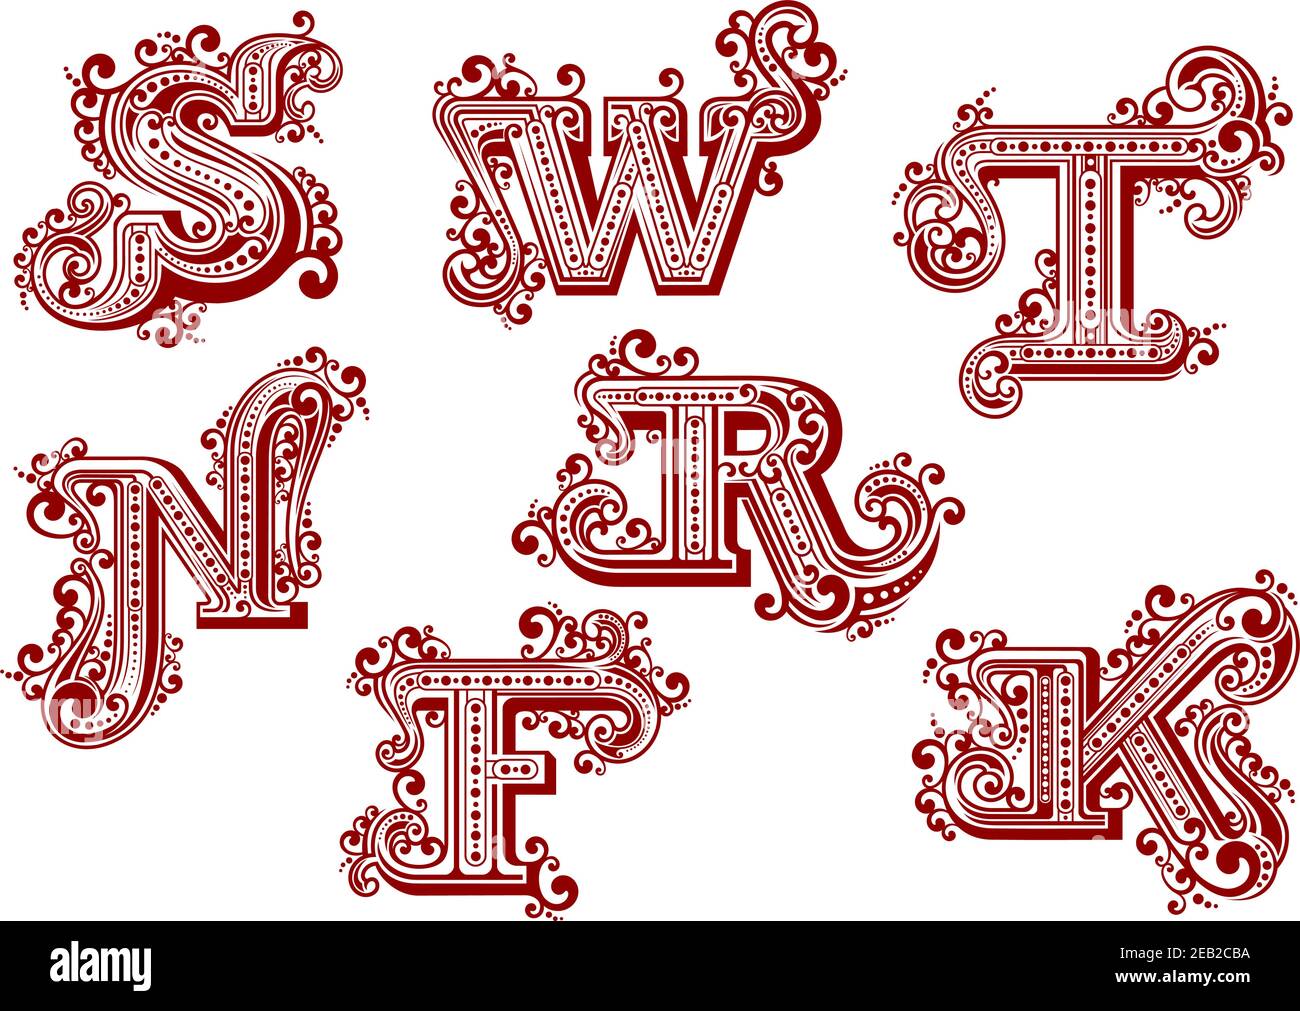 Eleganti lettere rosse in maiuscolo in stile vintage e vintage, ornate da linee intrecciate, curlicee e punti isolati su sfondo bianco. LETTERE F, K, N, R, S. Illustrazione Vettoriale